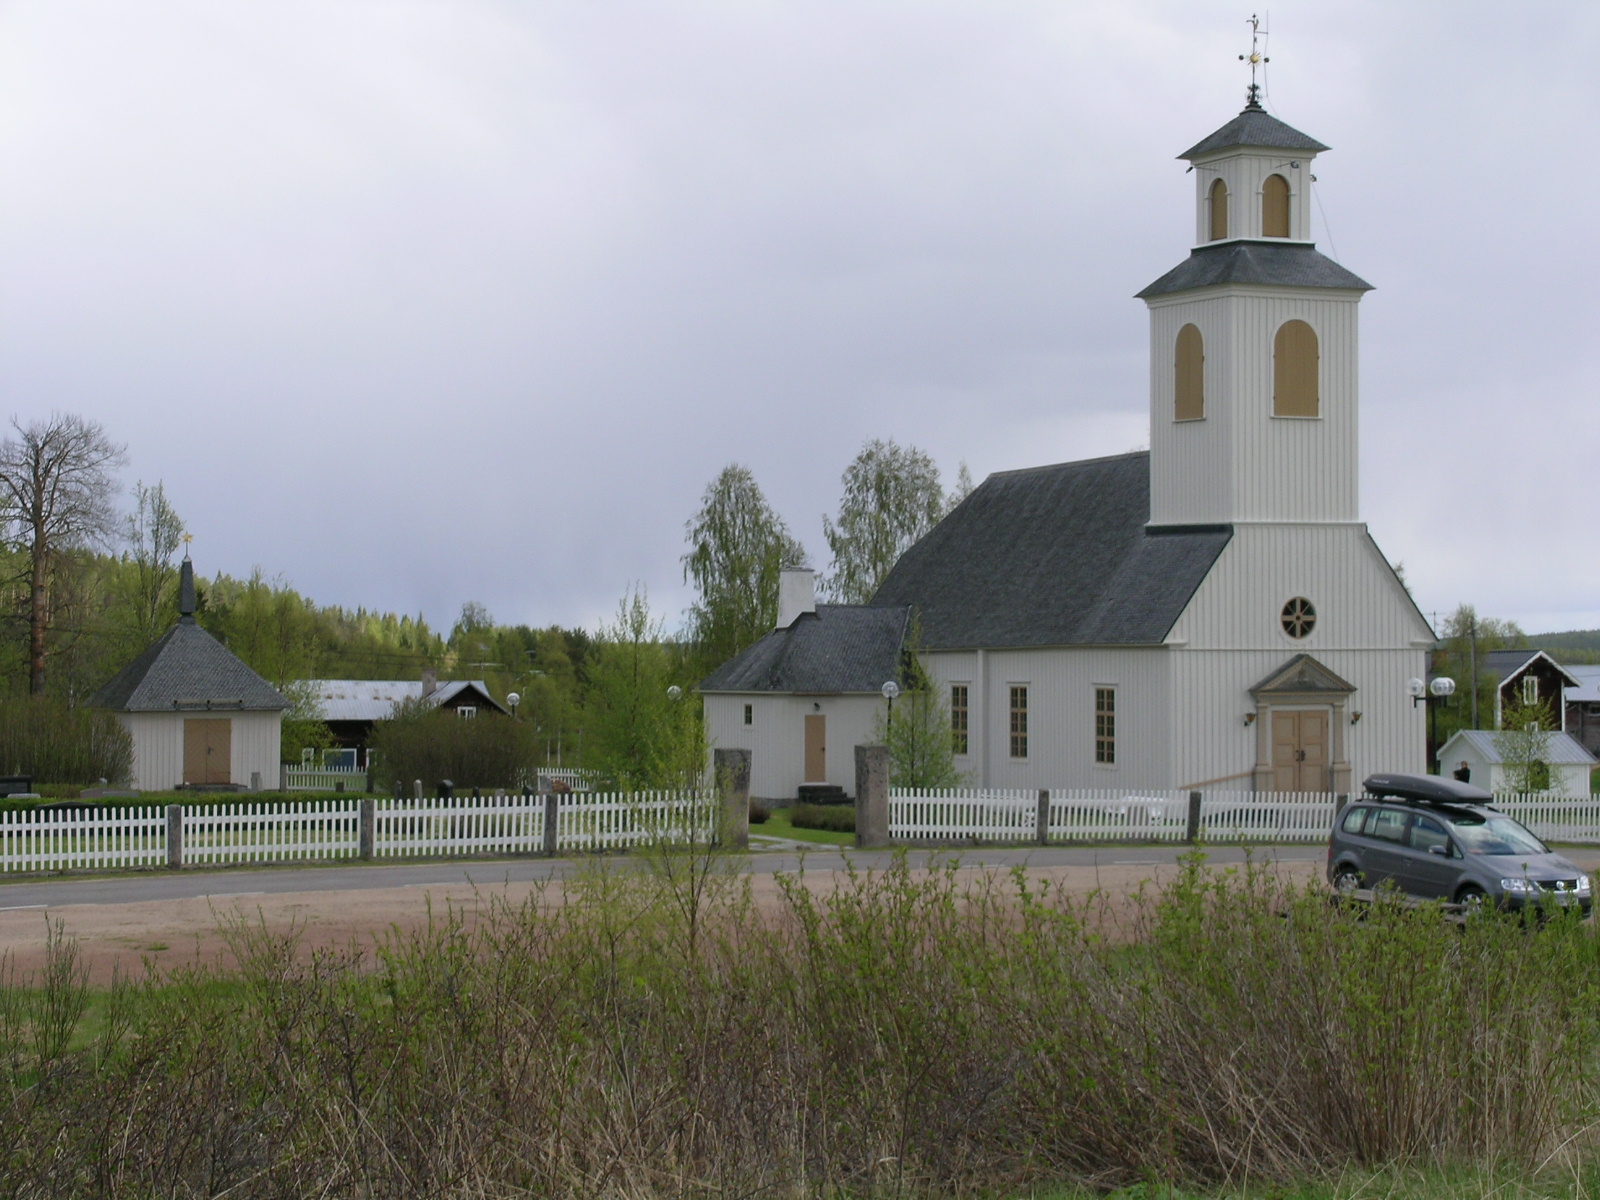 Ängersjö kyrka med omgivande kyrkogård & Bårhus, vy från nordväst. 


Bilderna är tagna av Isa Lindkvist & Christina Persson, bebyggelseantikvarier vid Jämtlands läns museum, i samband med inventeringen. 